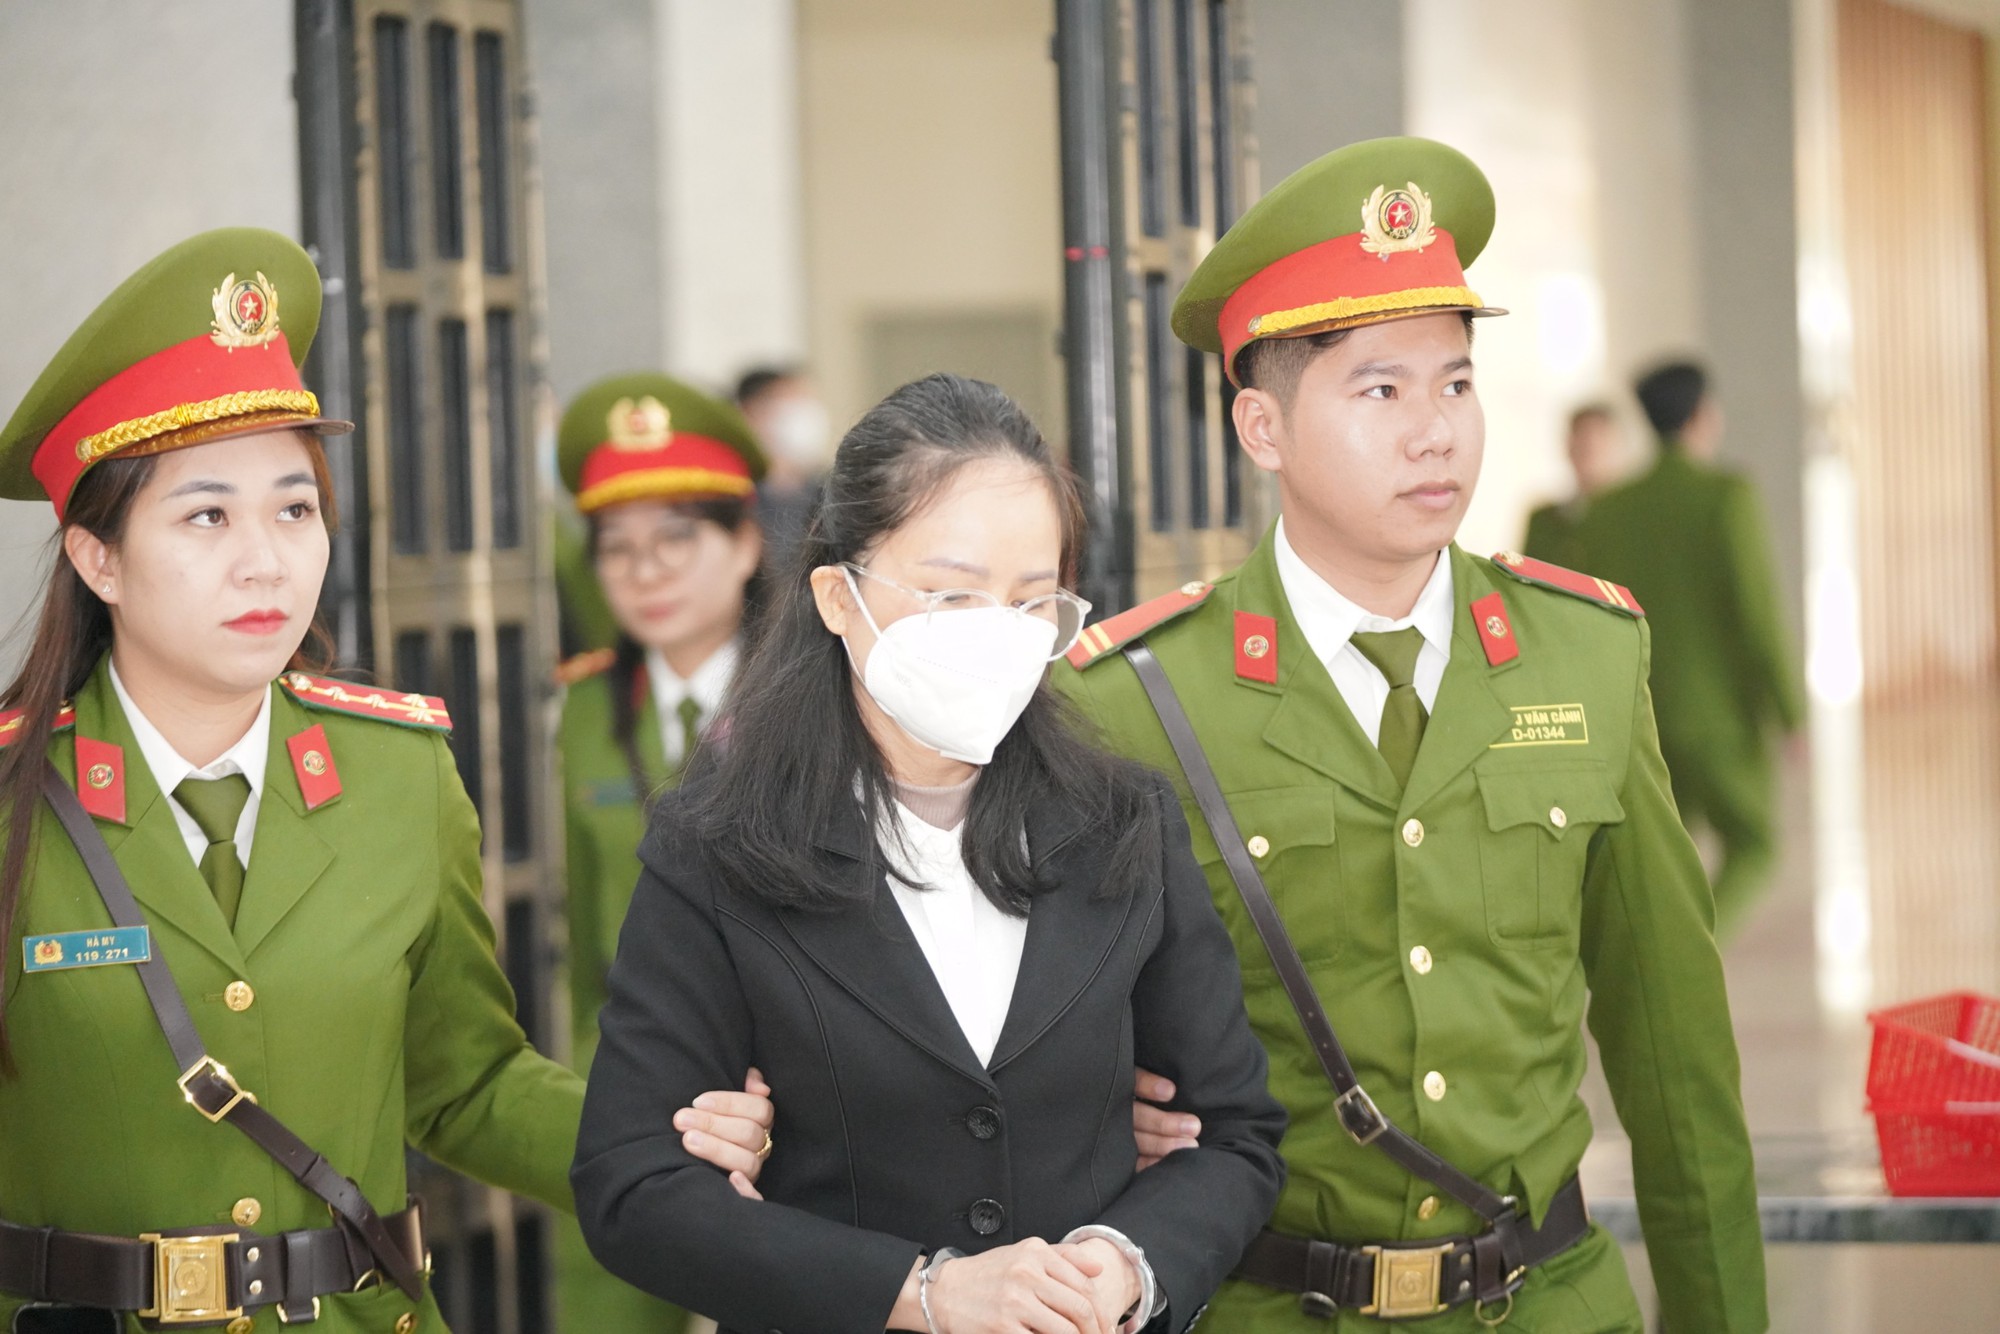 Chuyến bay giải cứu: Hoàng Văn Hưng được giảm án còn 20 năm tù - Ảnh 2.